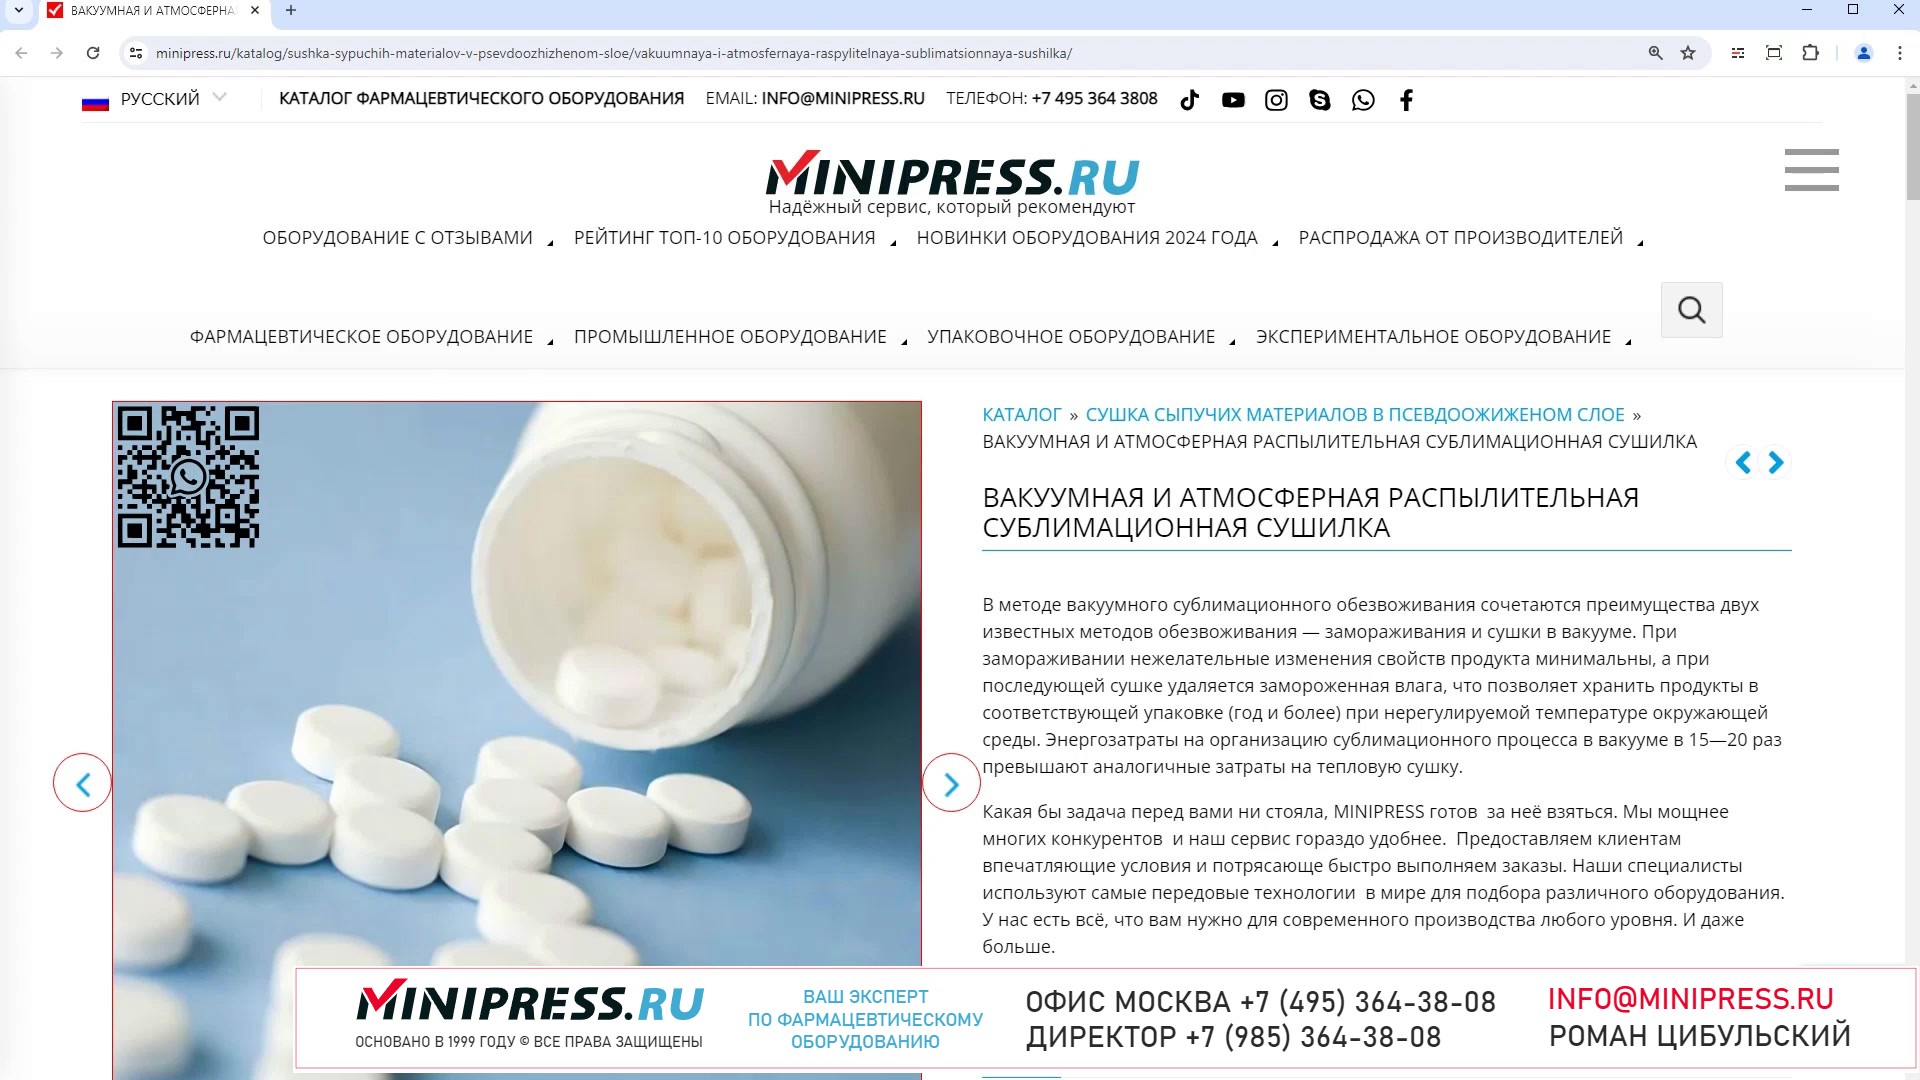 Minipress.ru Вакуумная и атмосферная распылительная сублимационная сушилка